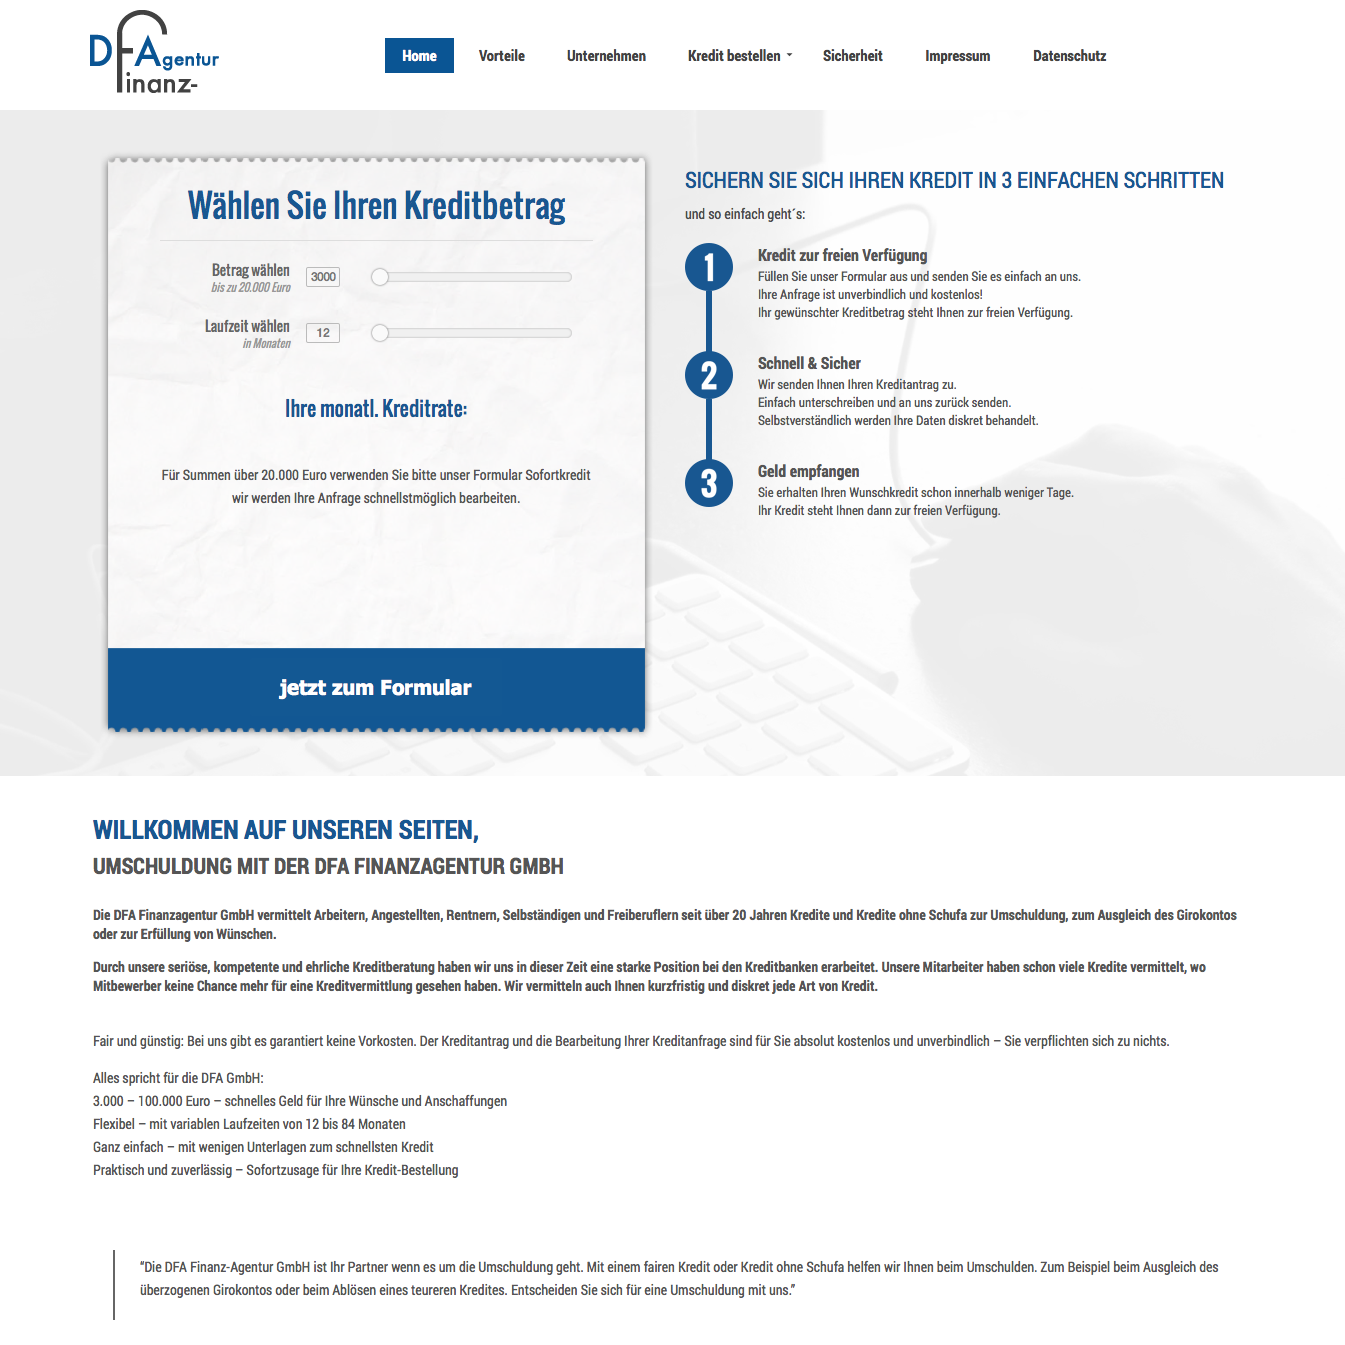 Die Homepage der DFA Finanz-Agentur GmbH